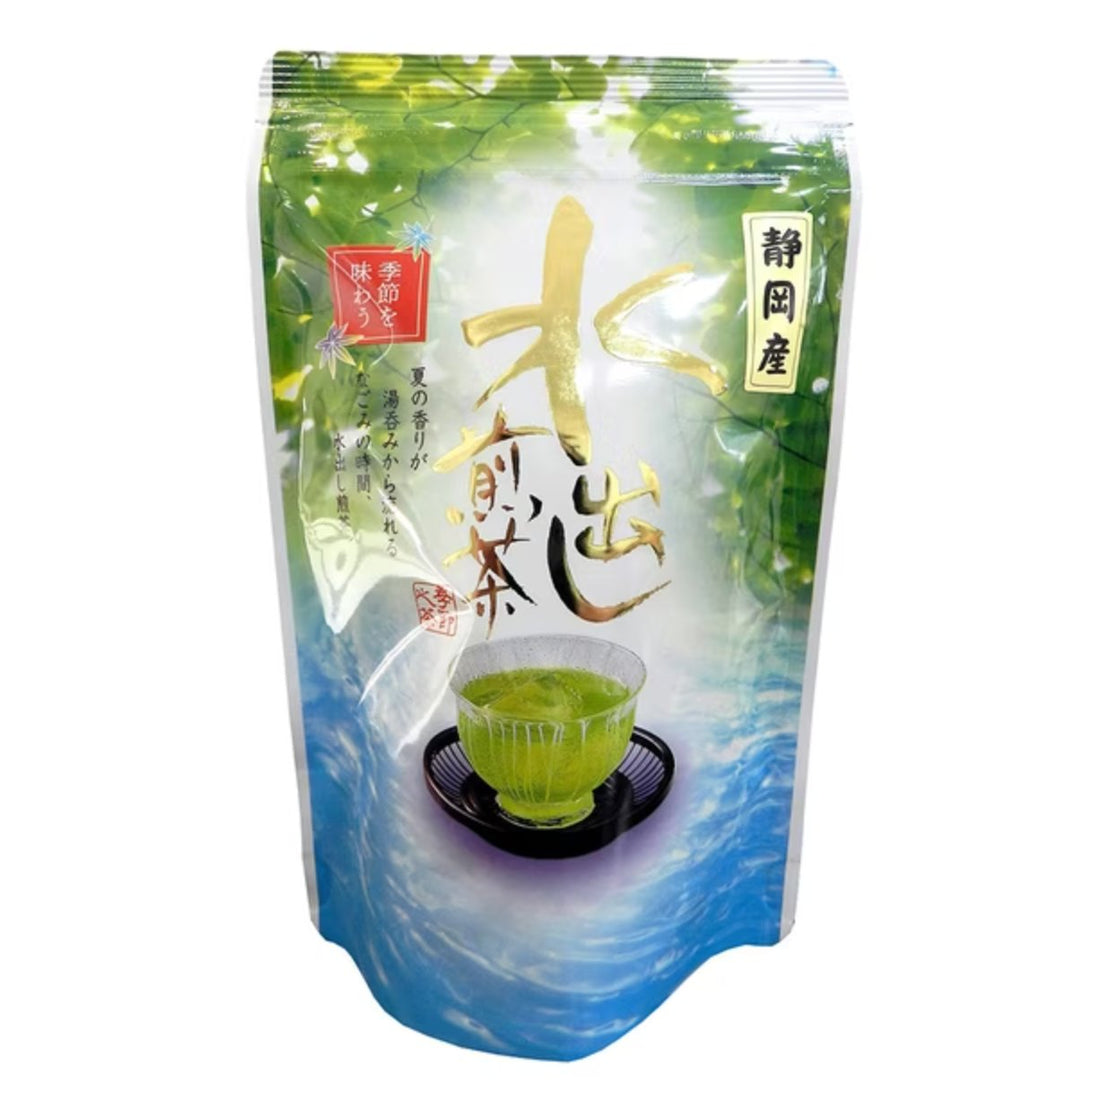 Hagiri Shizuoka Cold Brew Sencha Tea Bag 5g x 30 - NihonMura